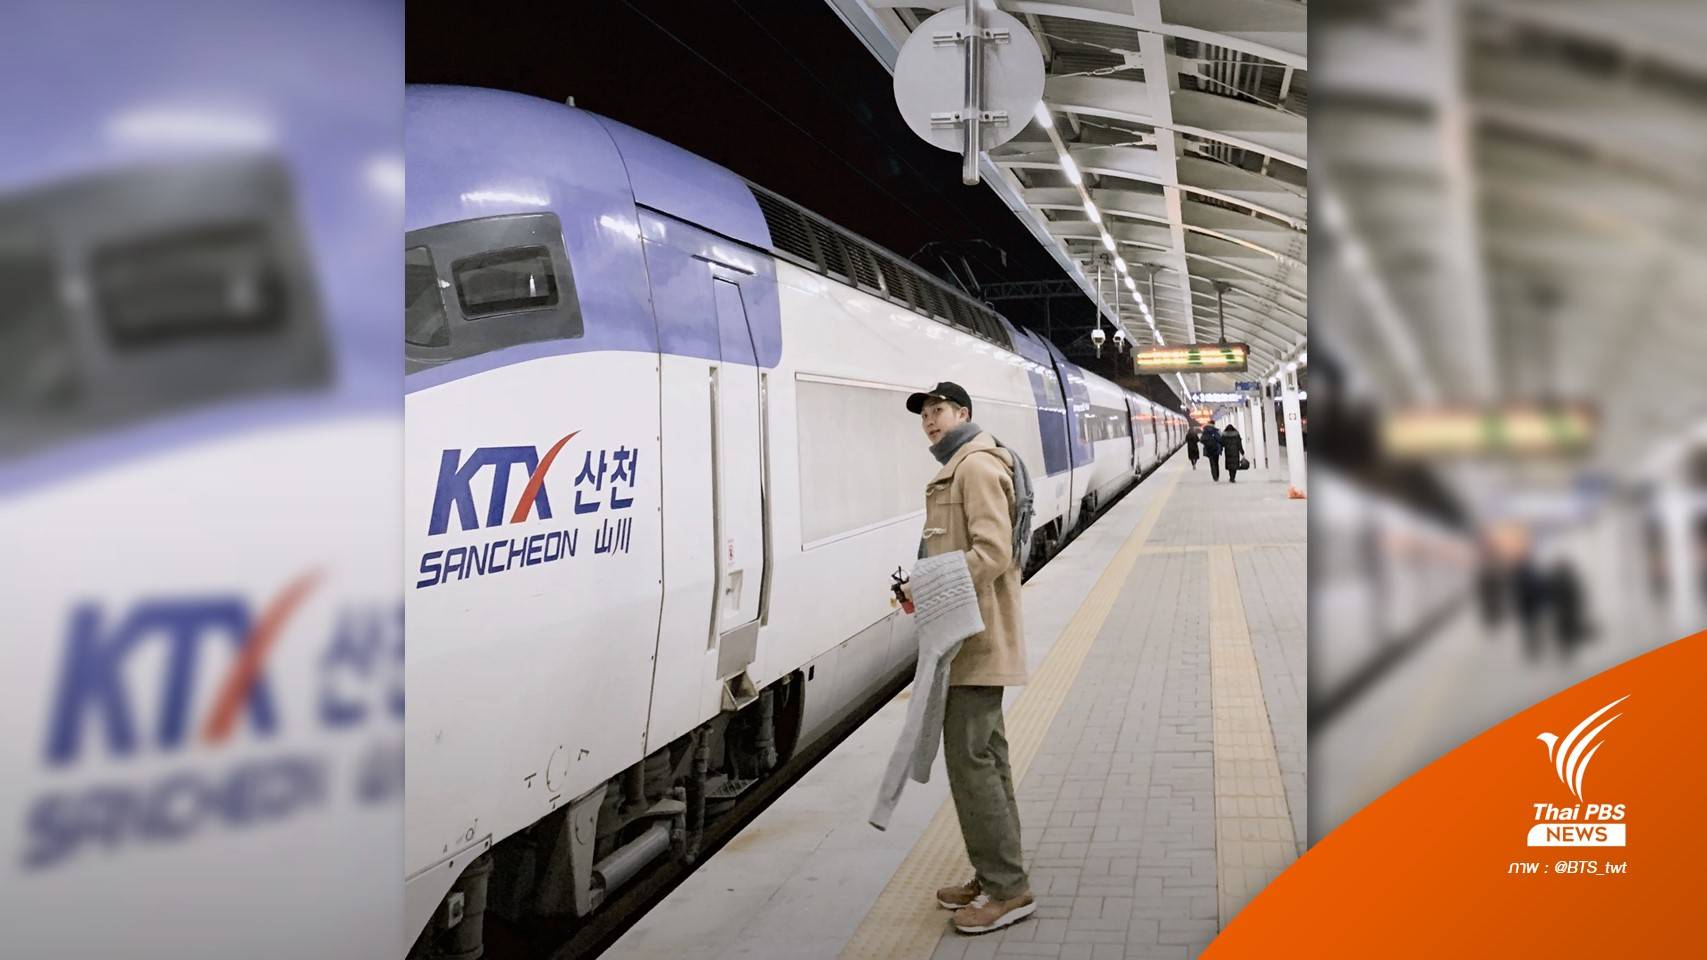 KORAIL ลงโทษพนักงานเข้าถึงข้อมูล "จองตั๋วรถไฟ-ที่อยู่-เบอร์โทร" RM วง BTS